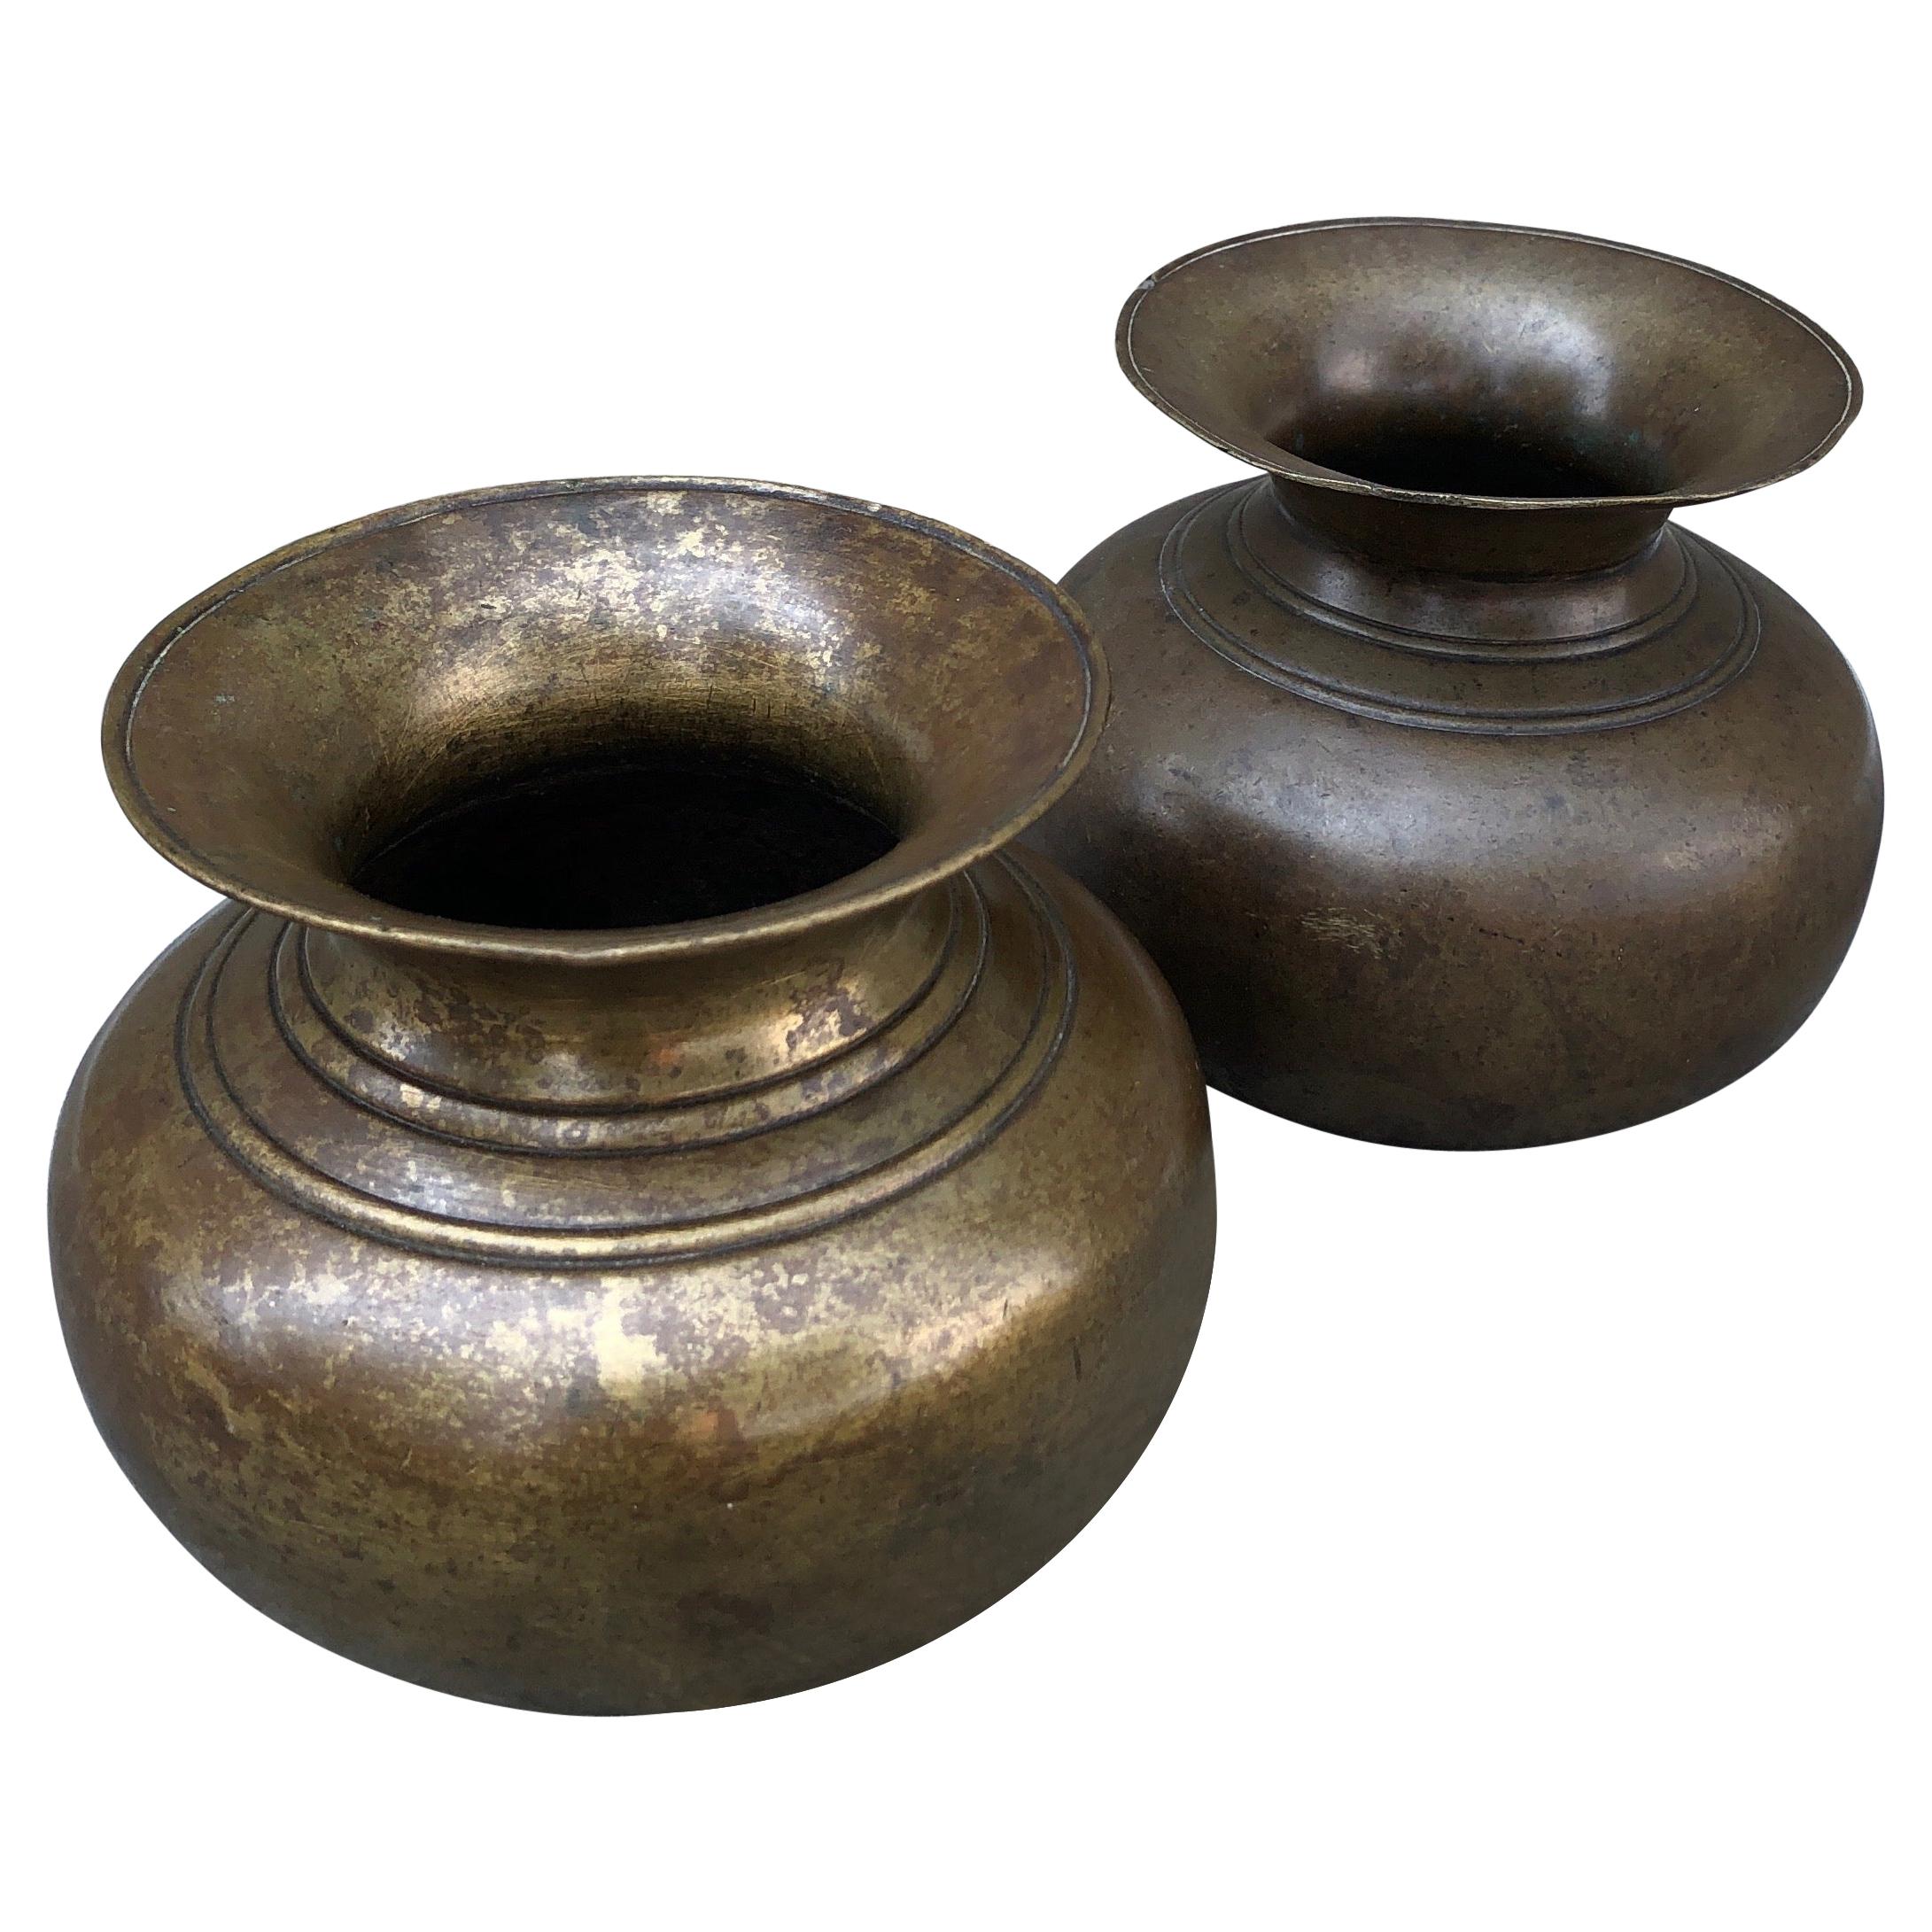 Récipients à eau Sainte en bronze ancien provenant du Népal